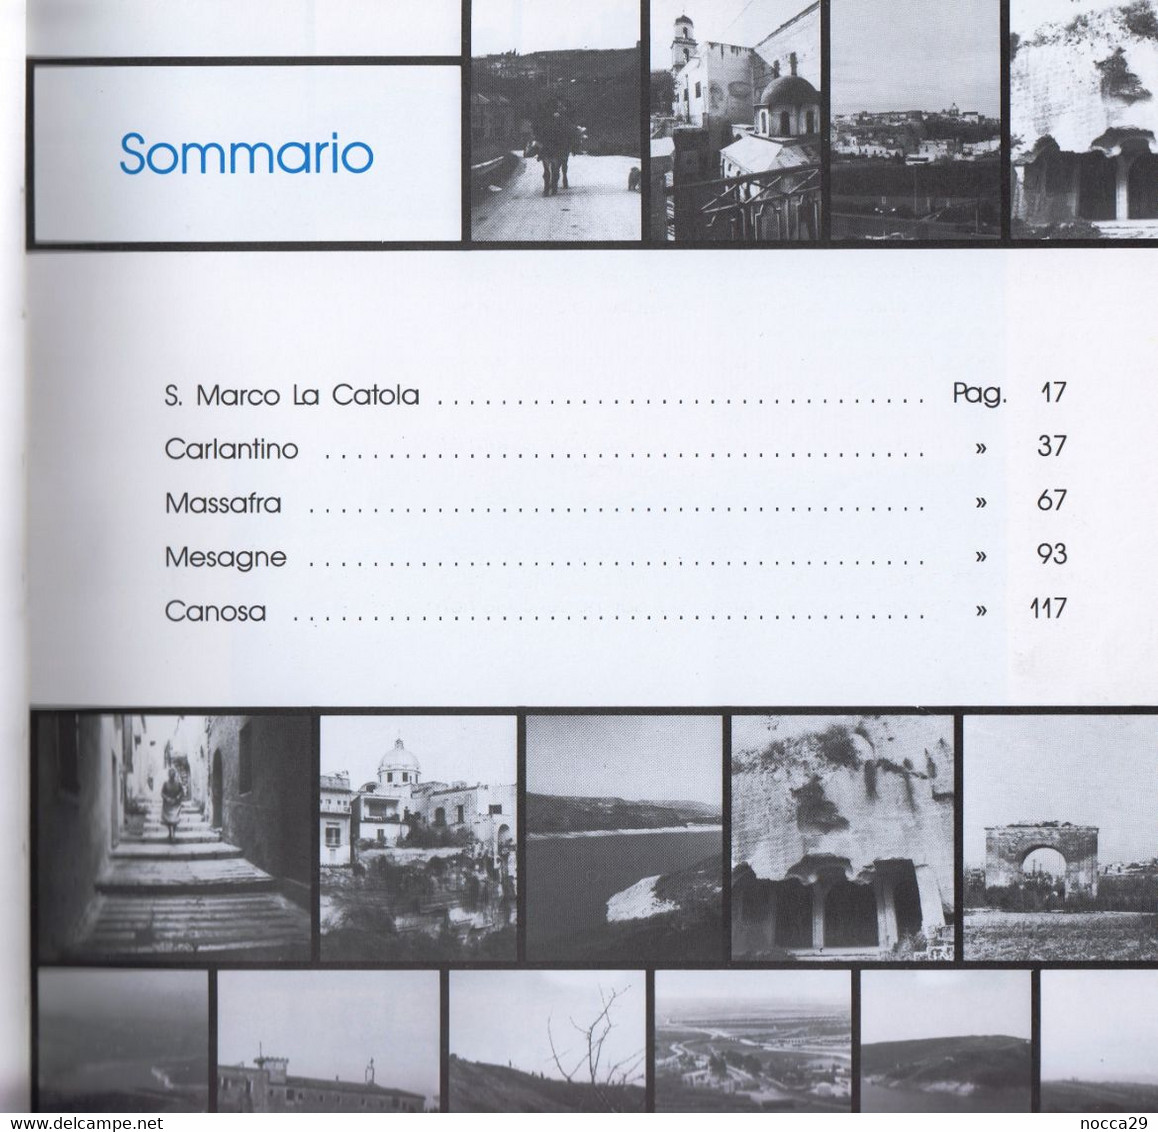 LIBRO FOTOGRAFICO 1988 IMMAGINI DEL TERRITORIO CARLANTINO S.MARCO LA CATOLA MASSAFRA MESAGNE CANOSA DI PUGLIA (STAMP243) - Pictures